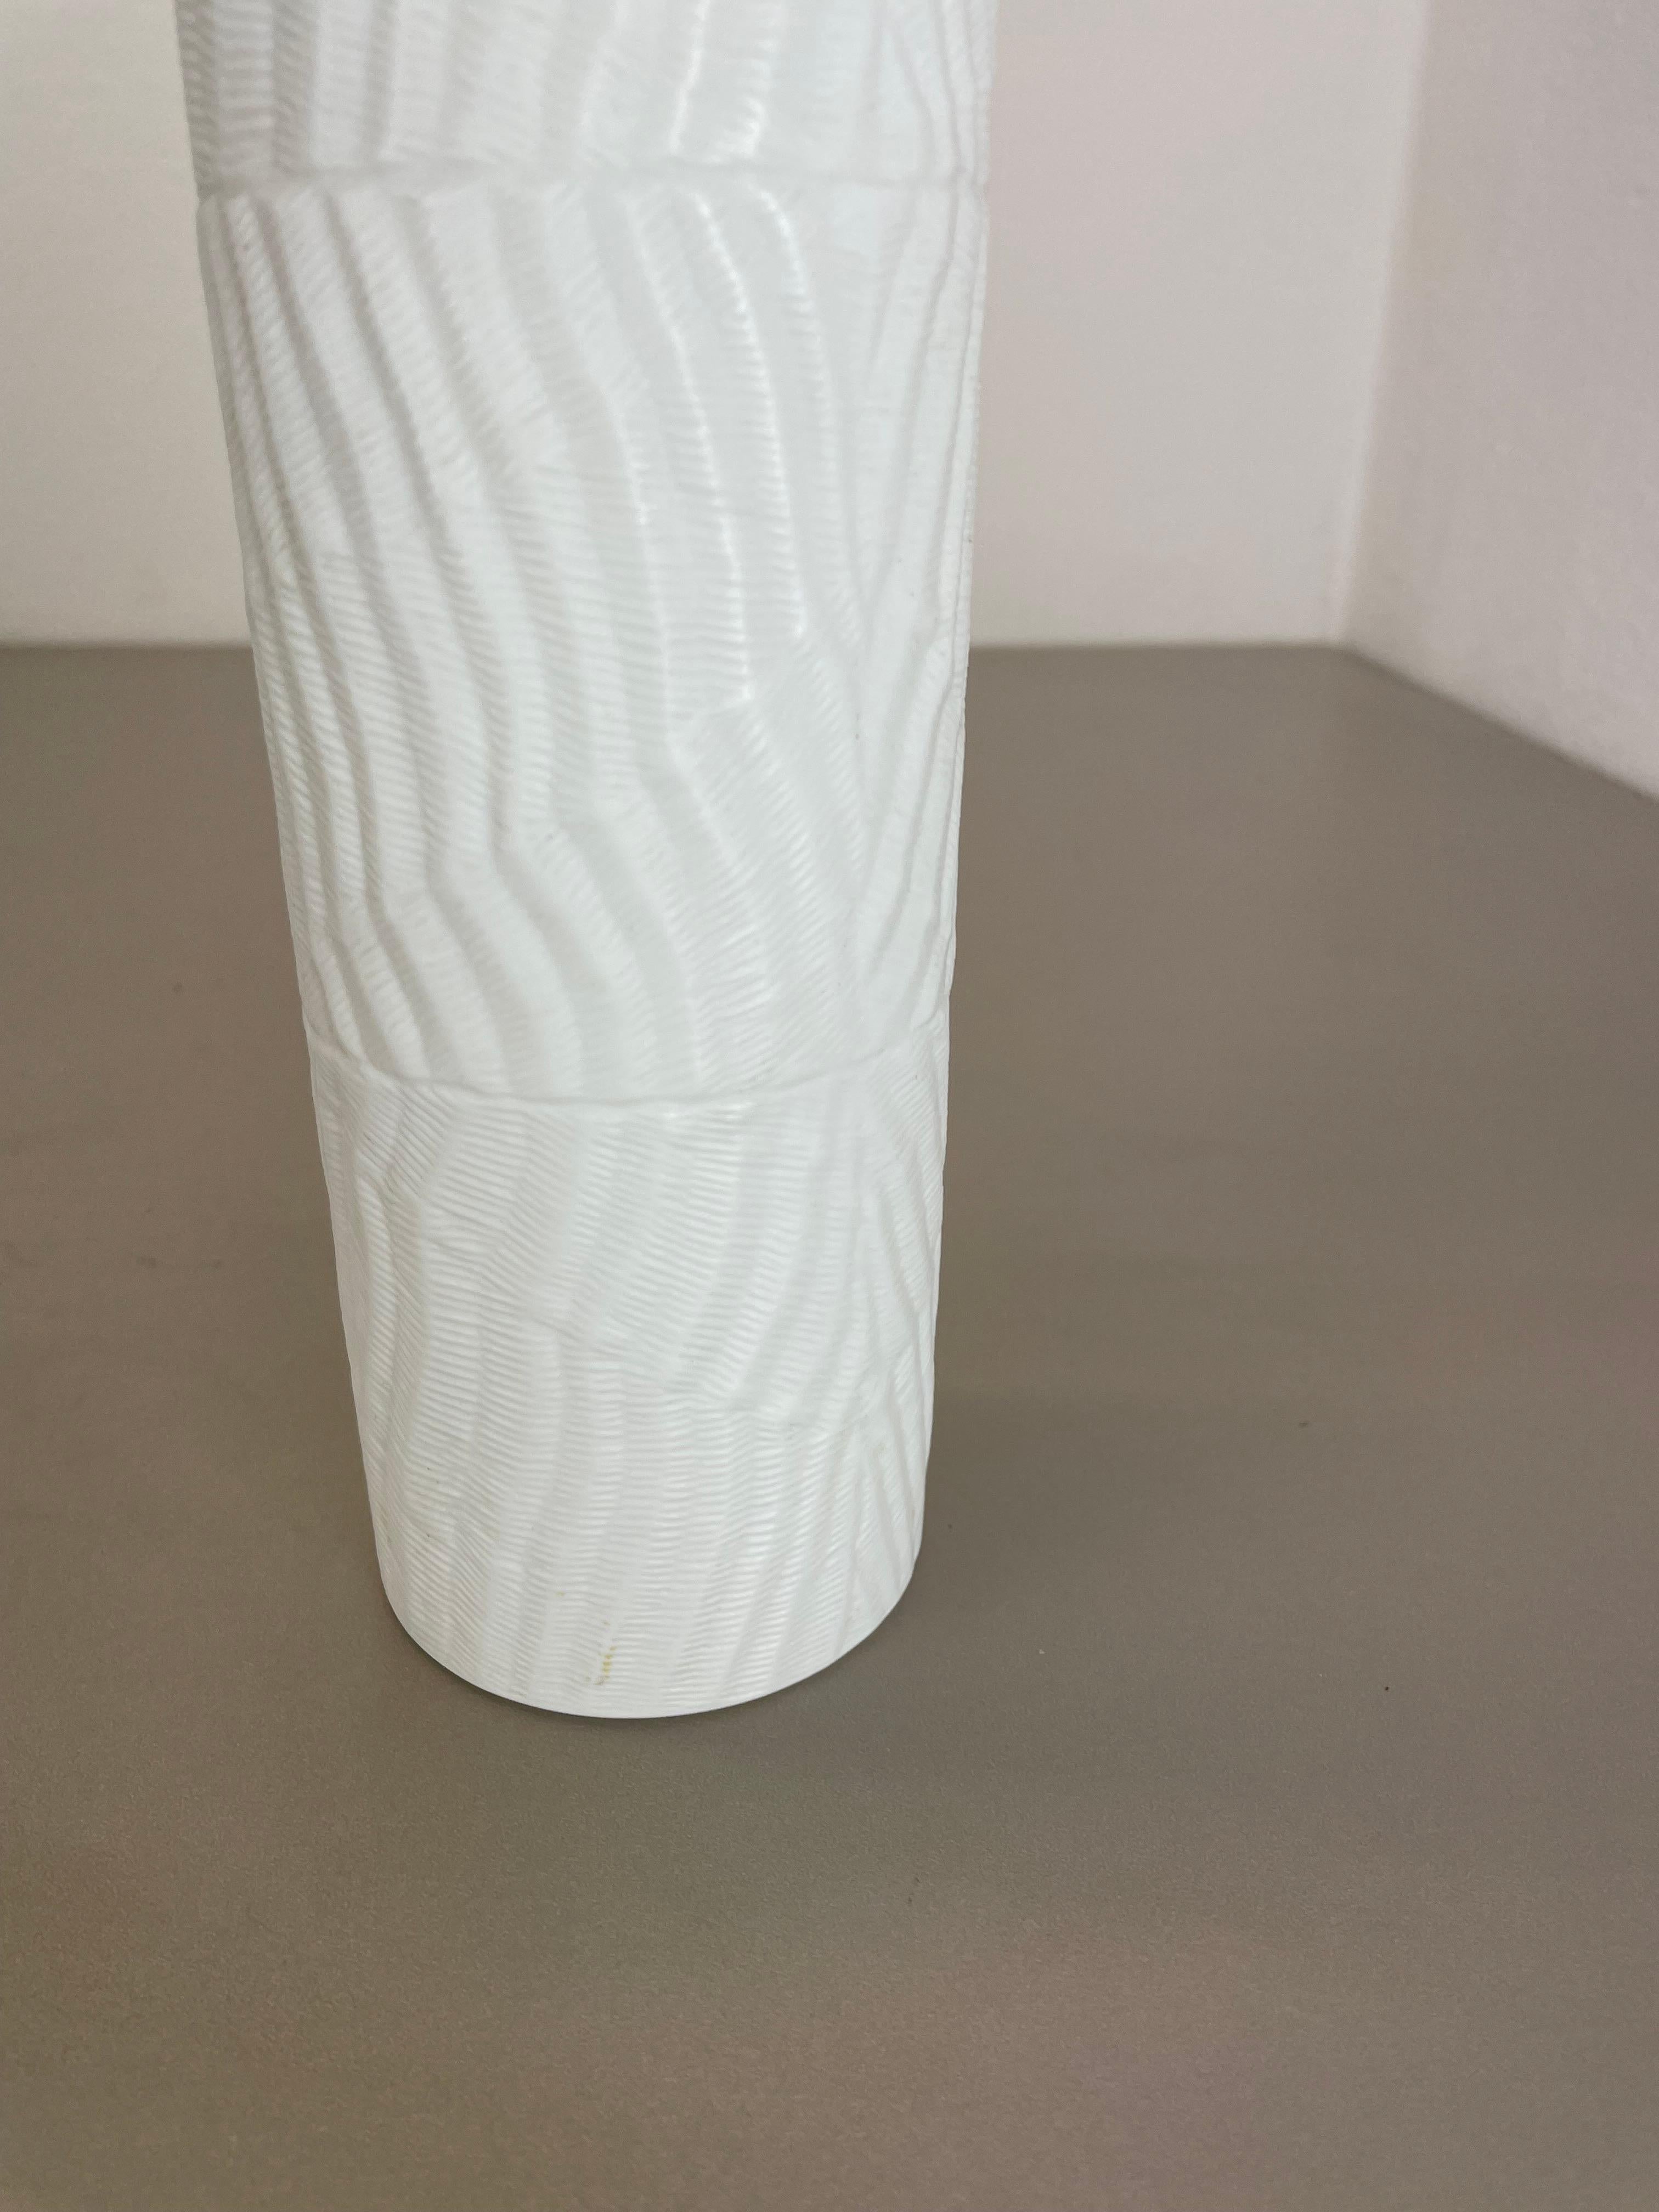 Large 23cm OP Art Vase Porcelain Vase by Martin Freyer for Rosenthal, Germany For Sale 6